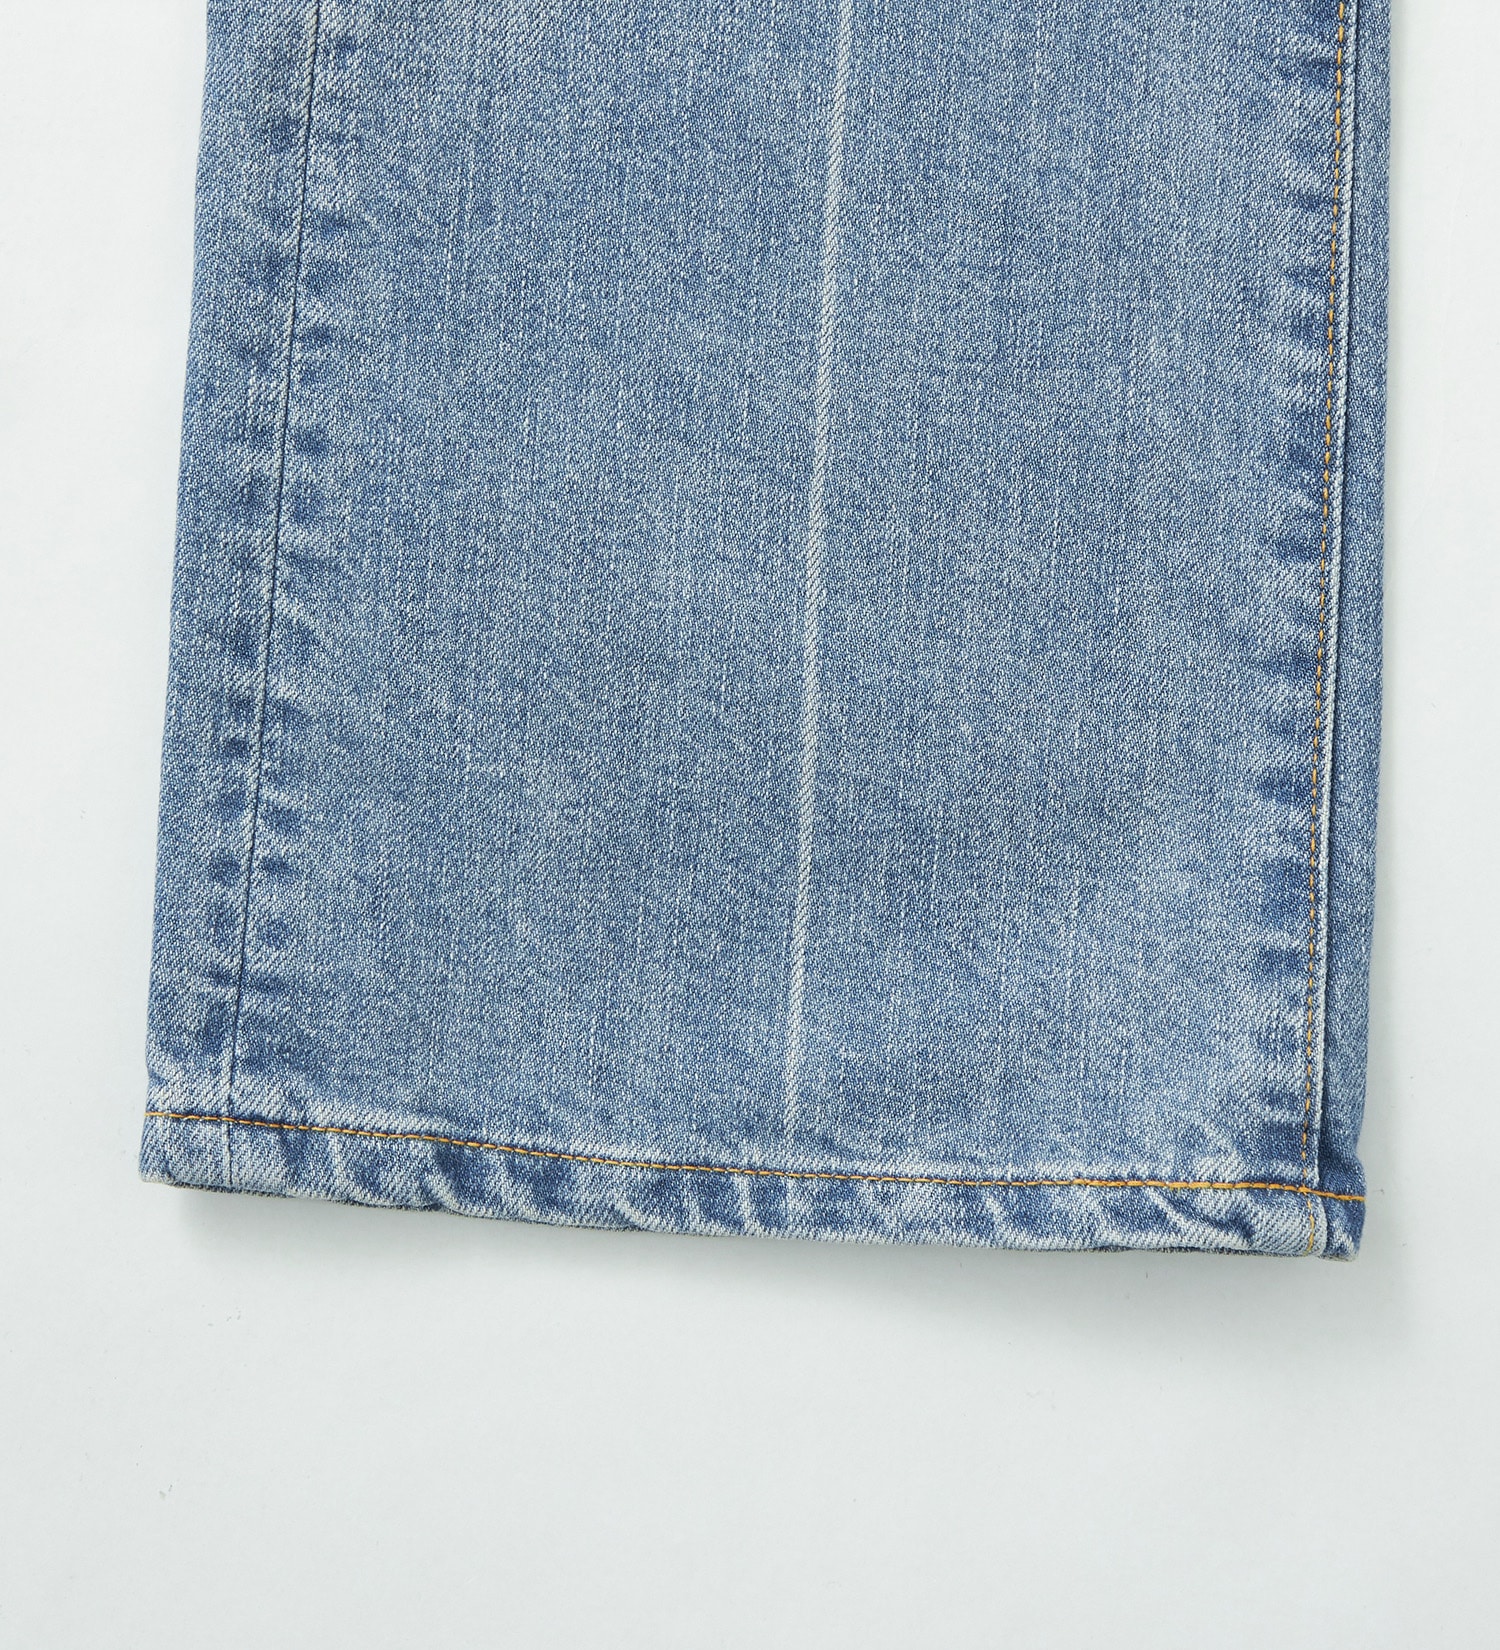 EDWIN(エドウイン)のBOROBORO BLUES ブーツカット デニムパンツ ダメージ フレア 日本製 MADE IN JAPAN|パンツ/デニムパンツ/メンズ|淡色ブルー